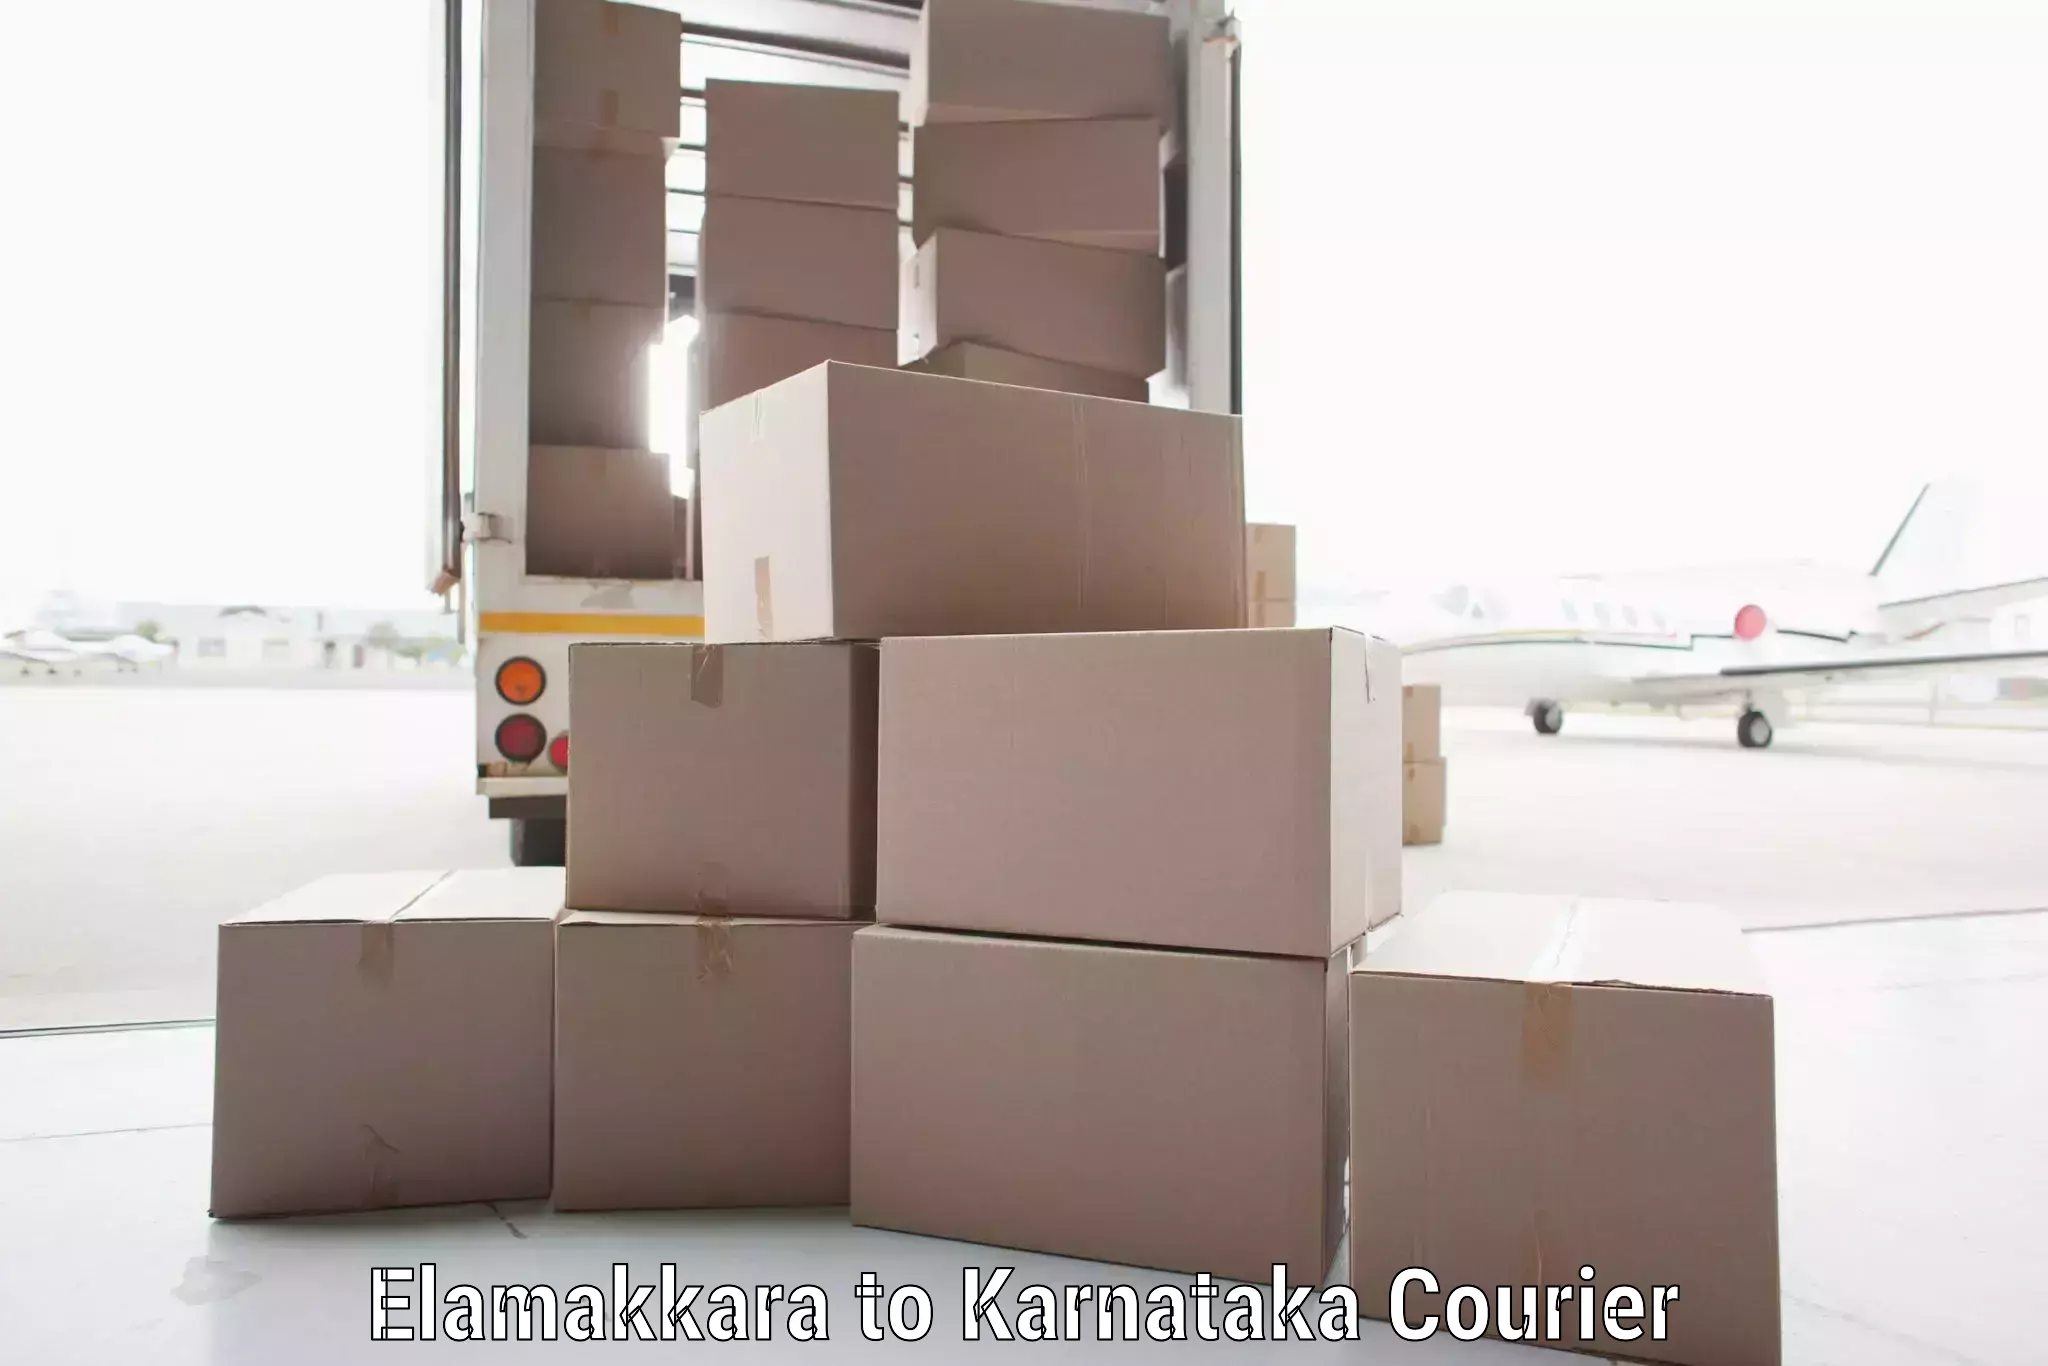 Nationwide parcel services Elamakkara to Mangalore